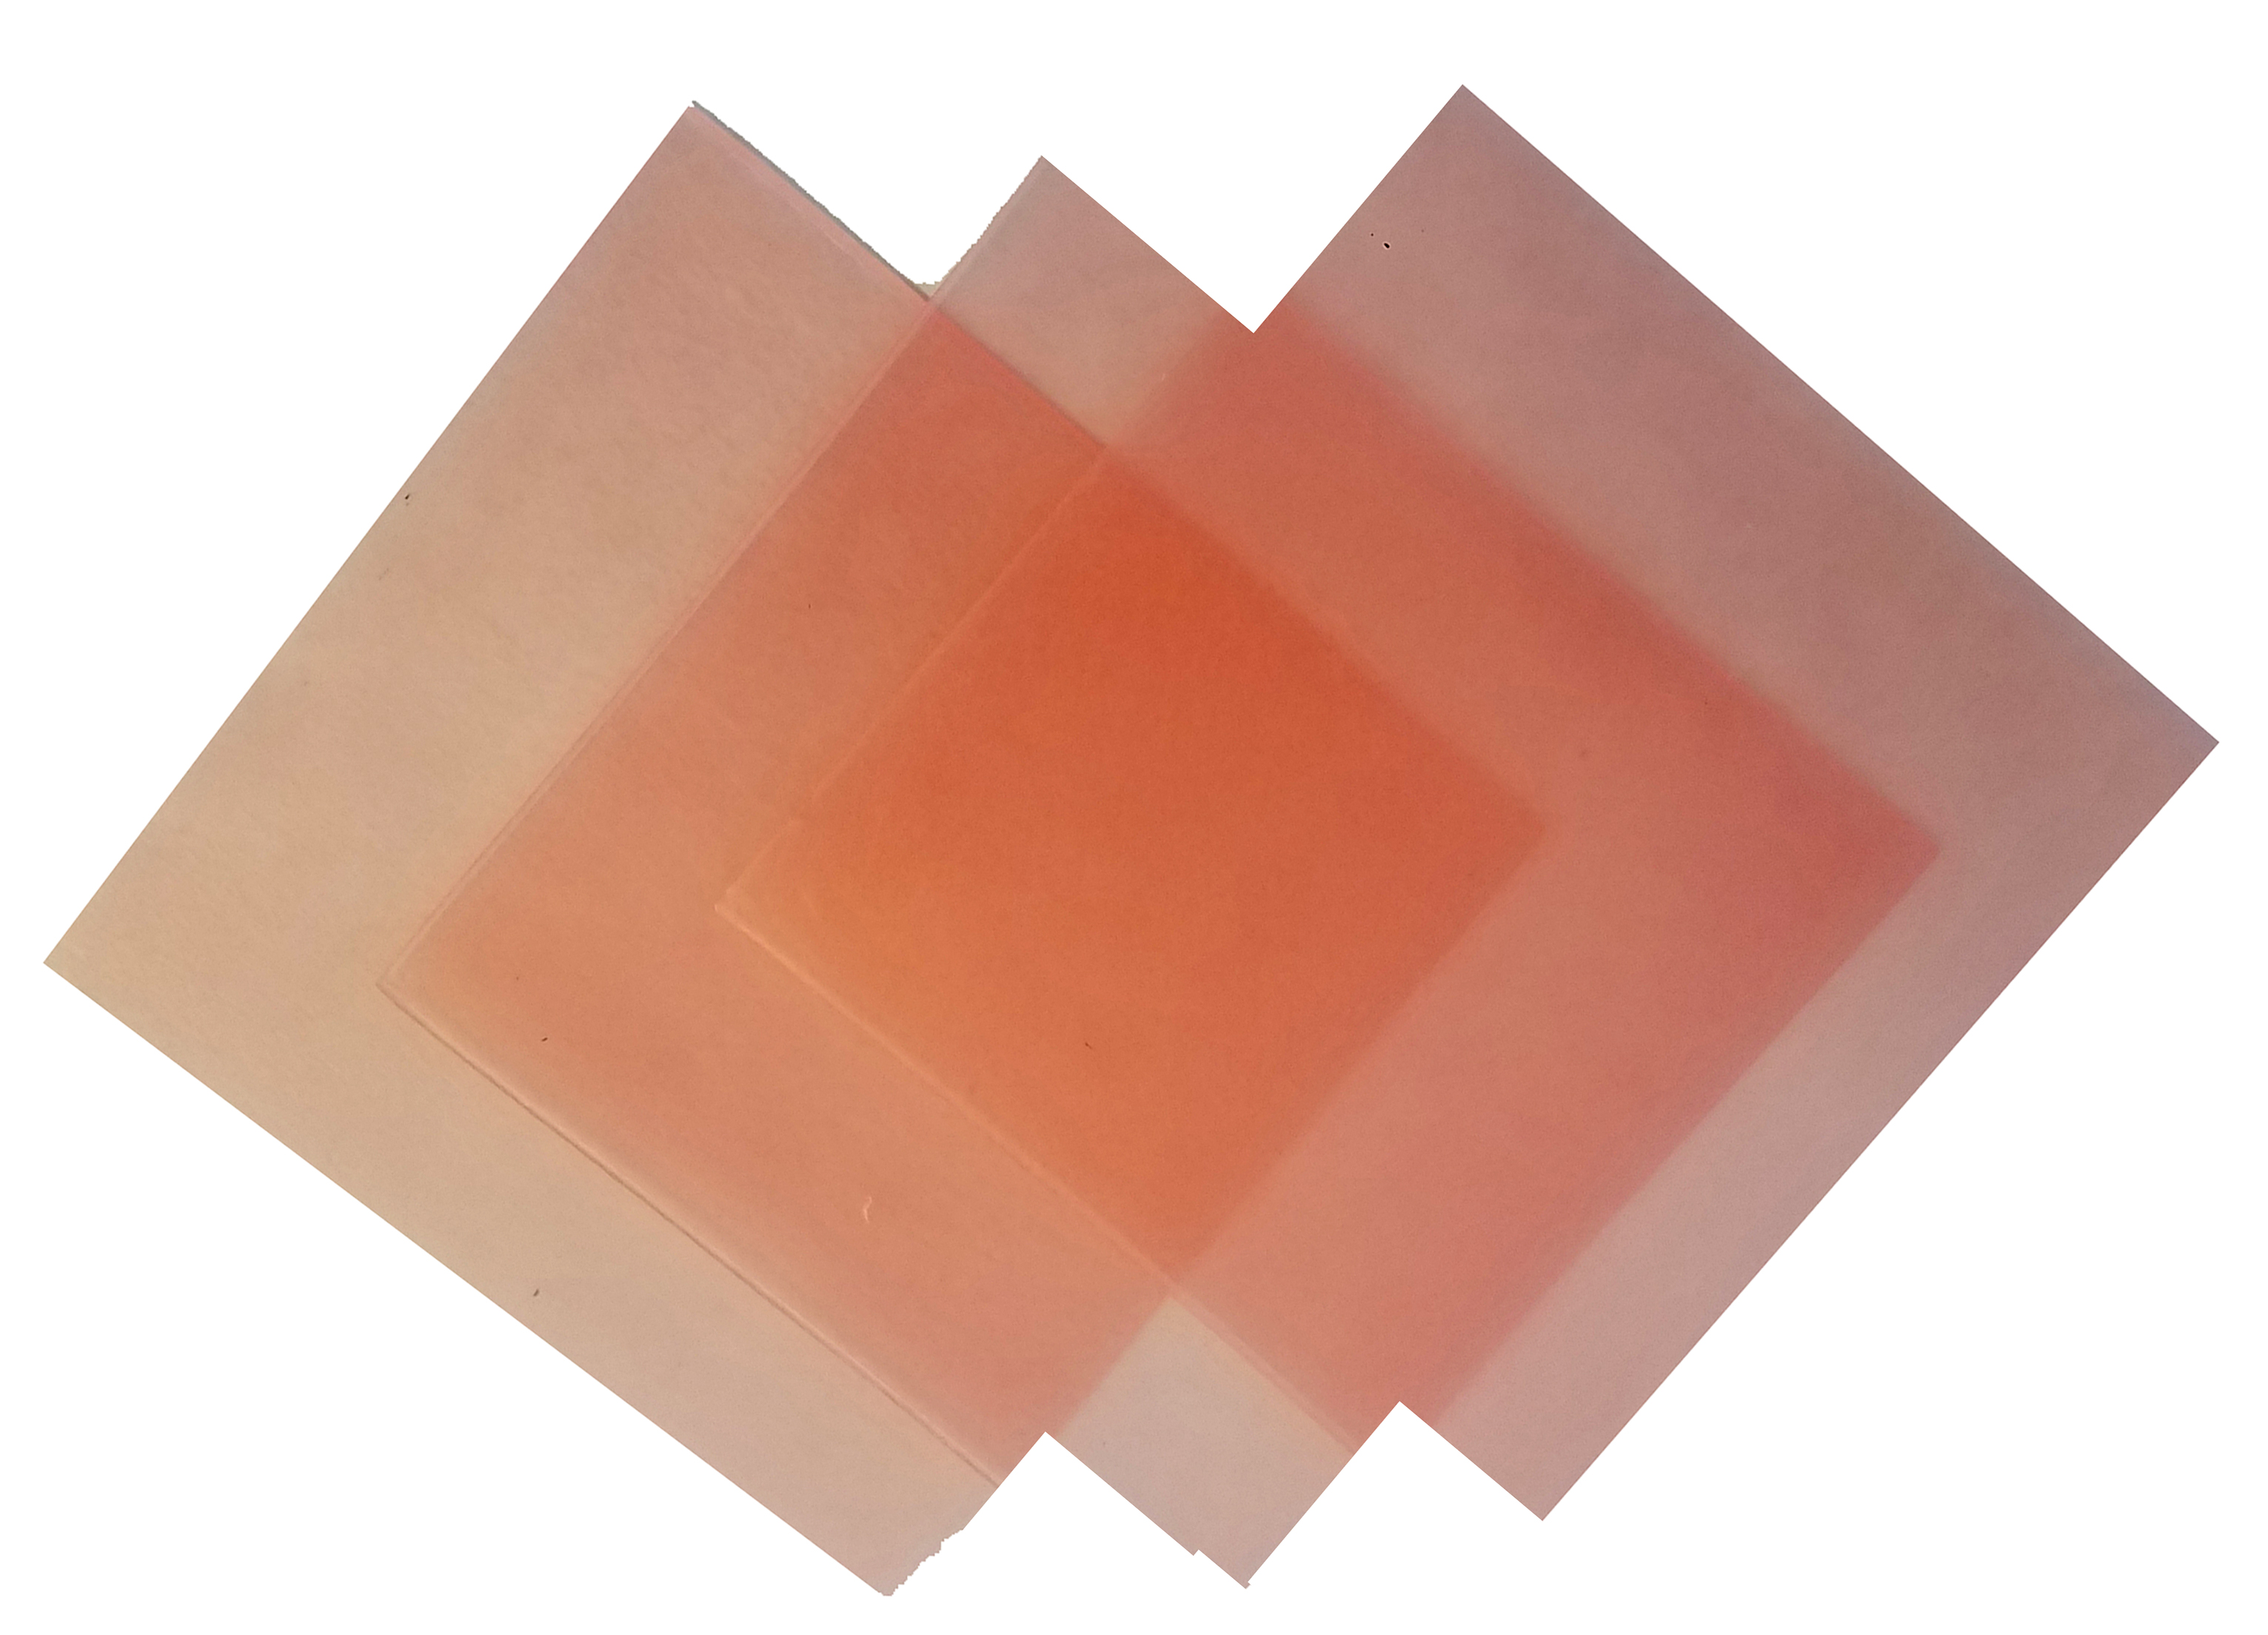 4"x4" sheet wax 18 gauge pink